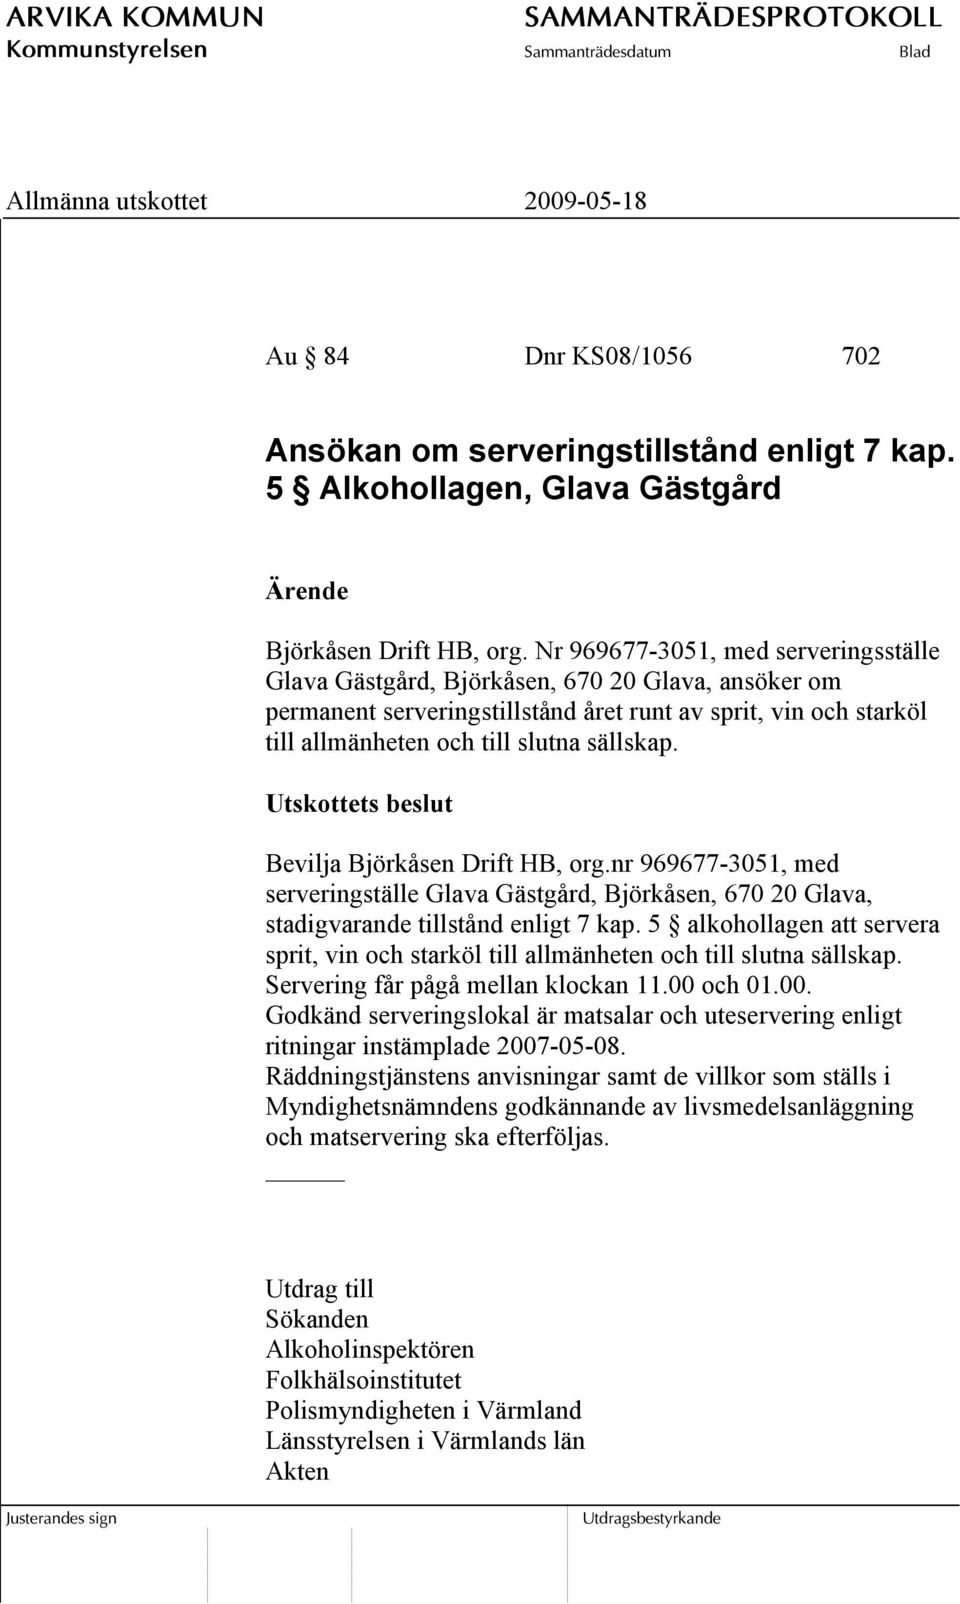 Utskottets beslut Bevilja Björkåsen Drift HB, org.nr 969677-3051, med serveringställe Glava Gästgård, Björkåsen, 670 20 Glava, stadigvarande tillstånd enligt 7 kap.